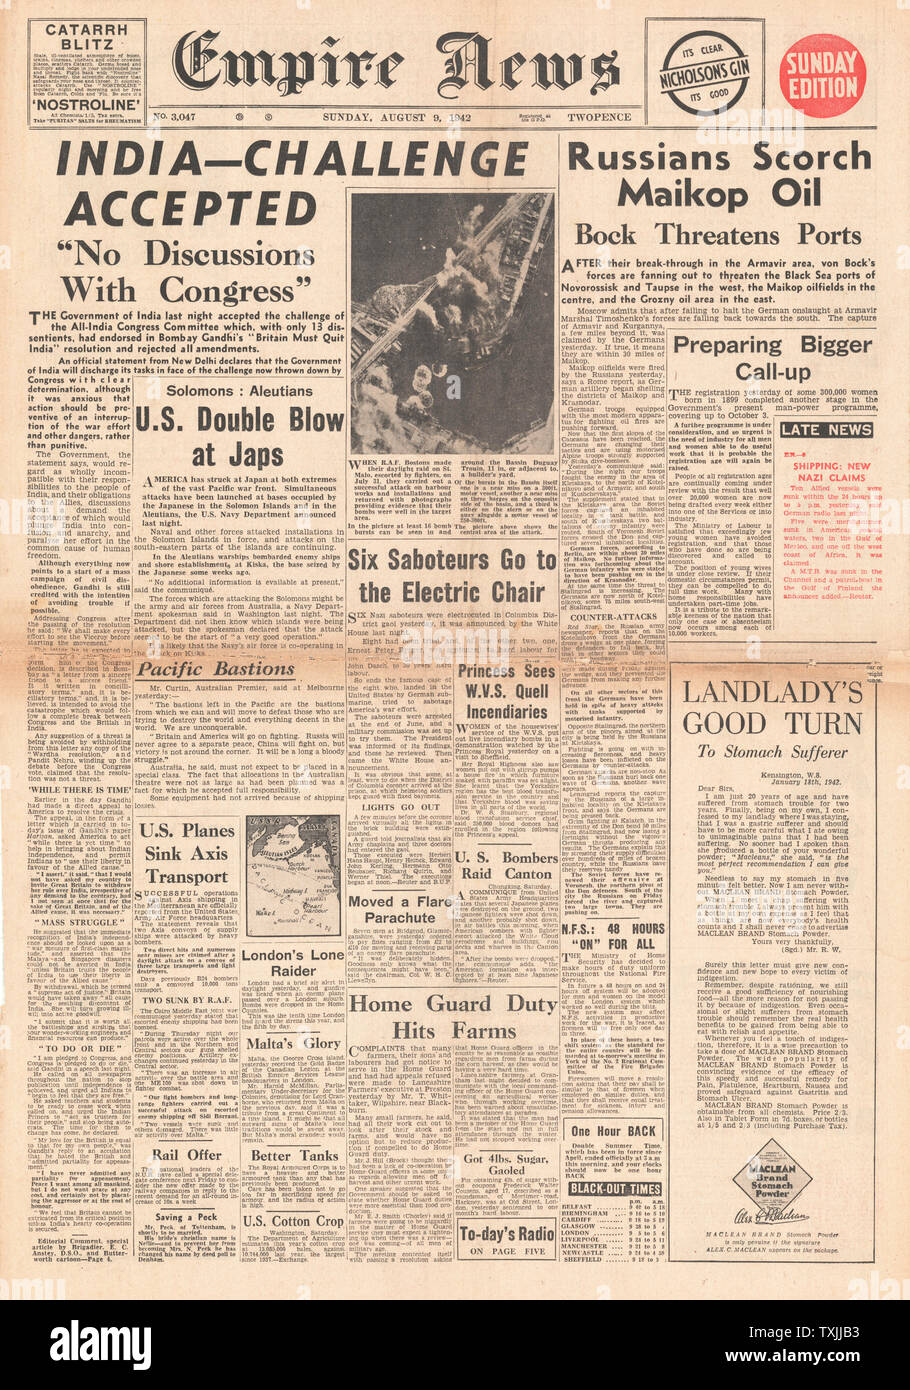 1942 front page Empire News Congresso indiano avallare Gandhi la chiamata per la Gran Bretagna a 'Quit India e l' esercito russo Maikop scorch CAMPI OLIO Foto Stock